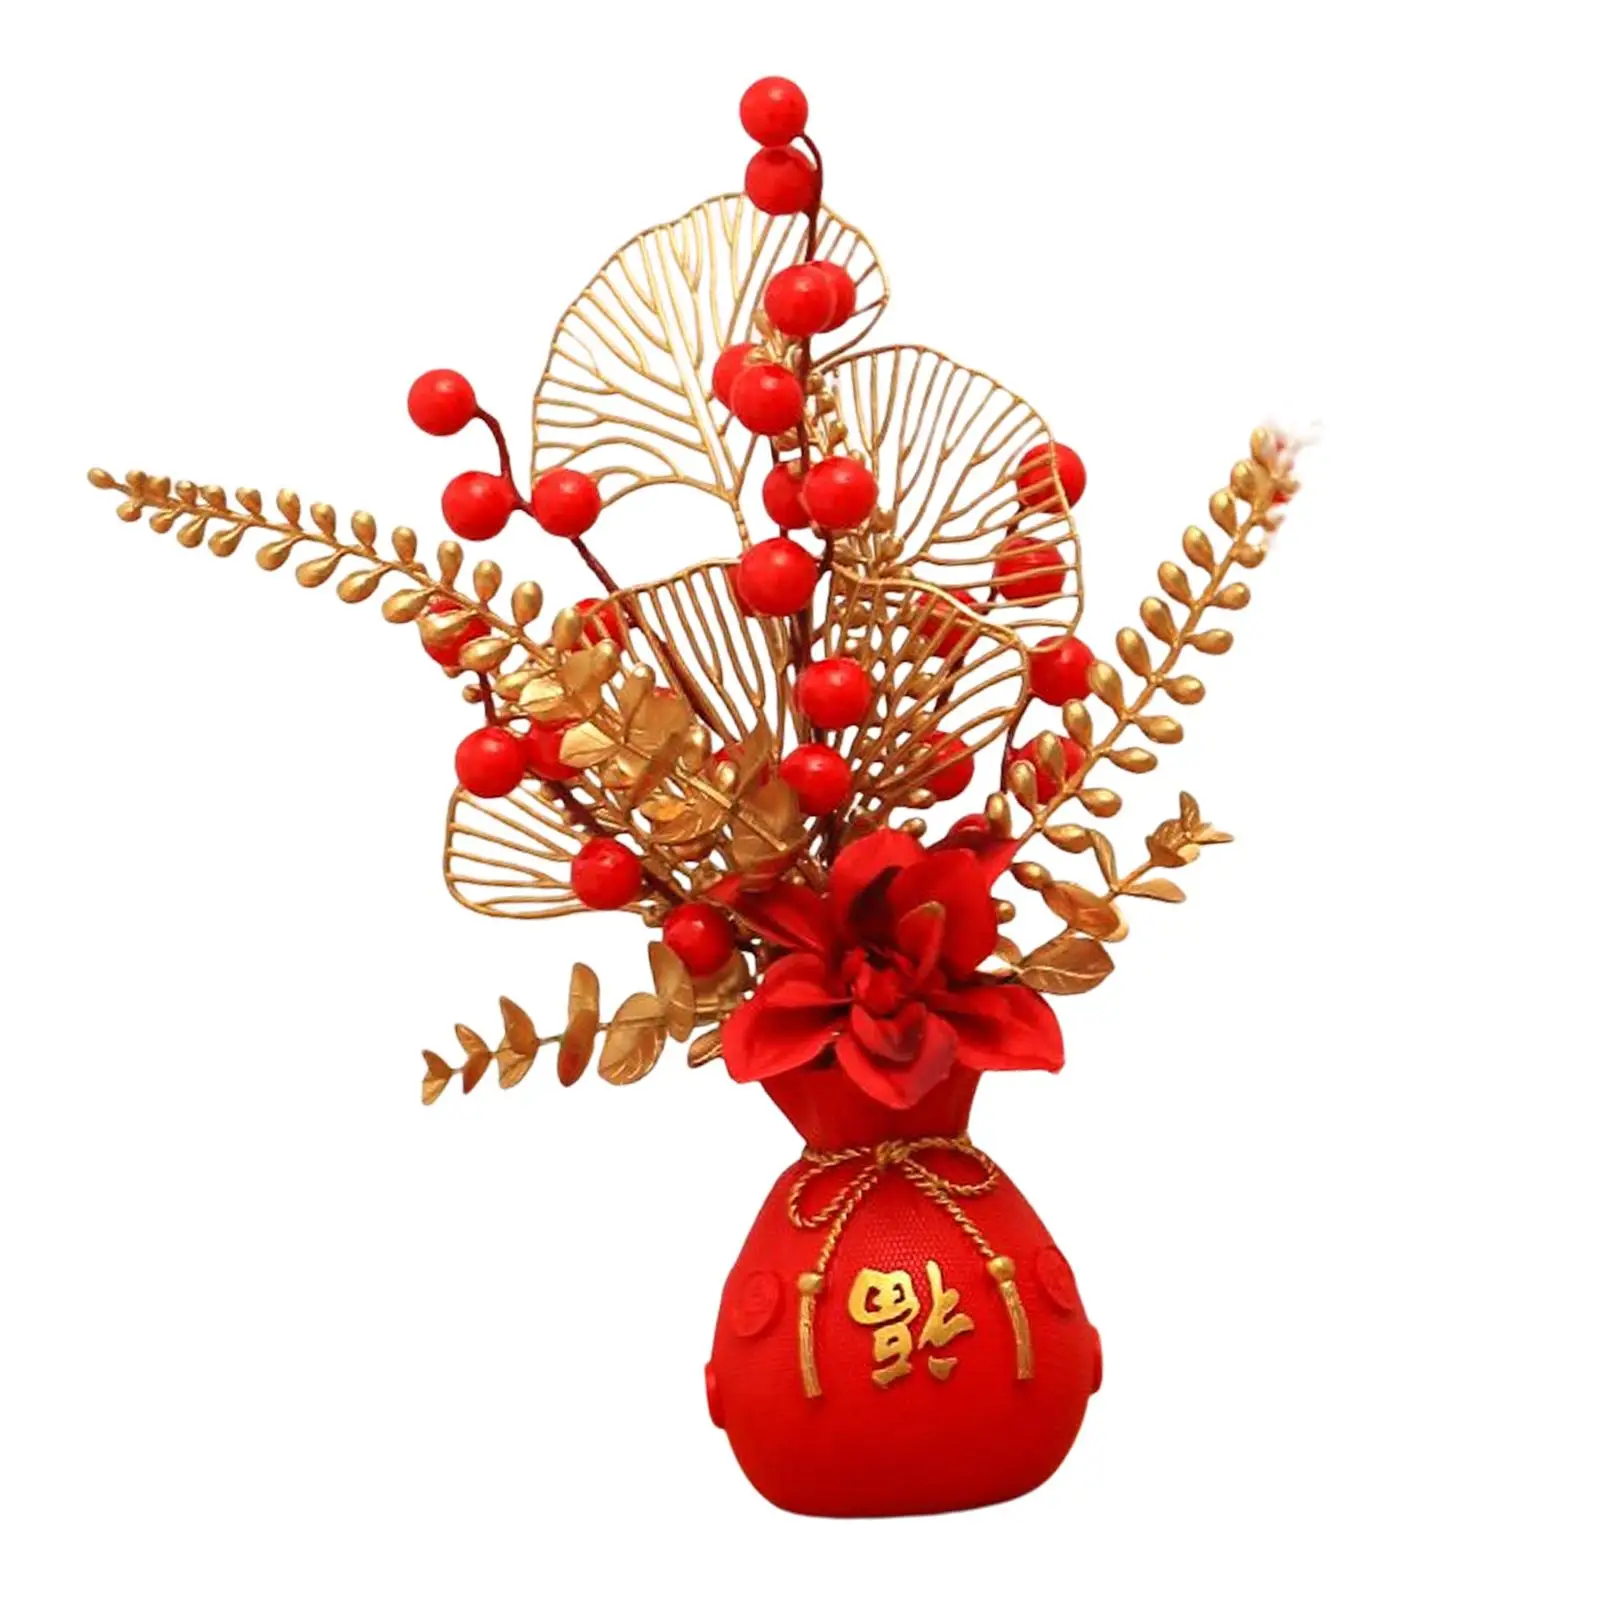 Flower Basket Ornament Decor Floral Arrangements Photo Props